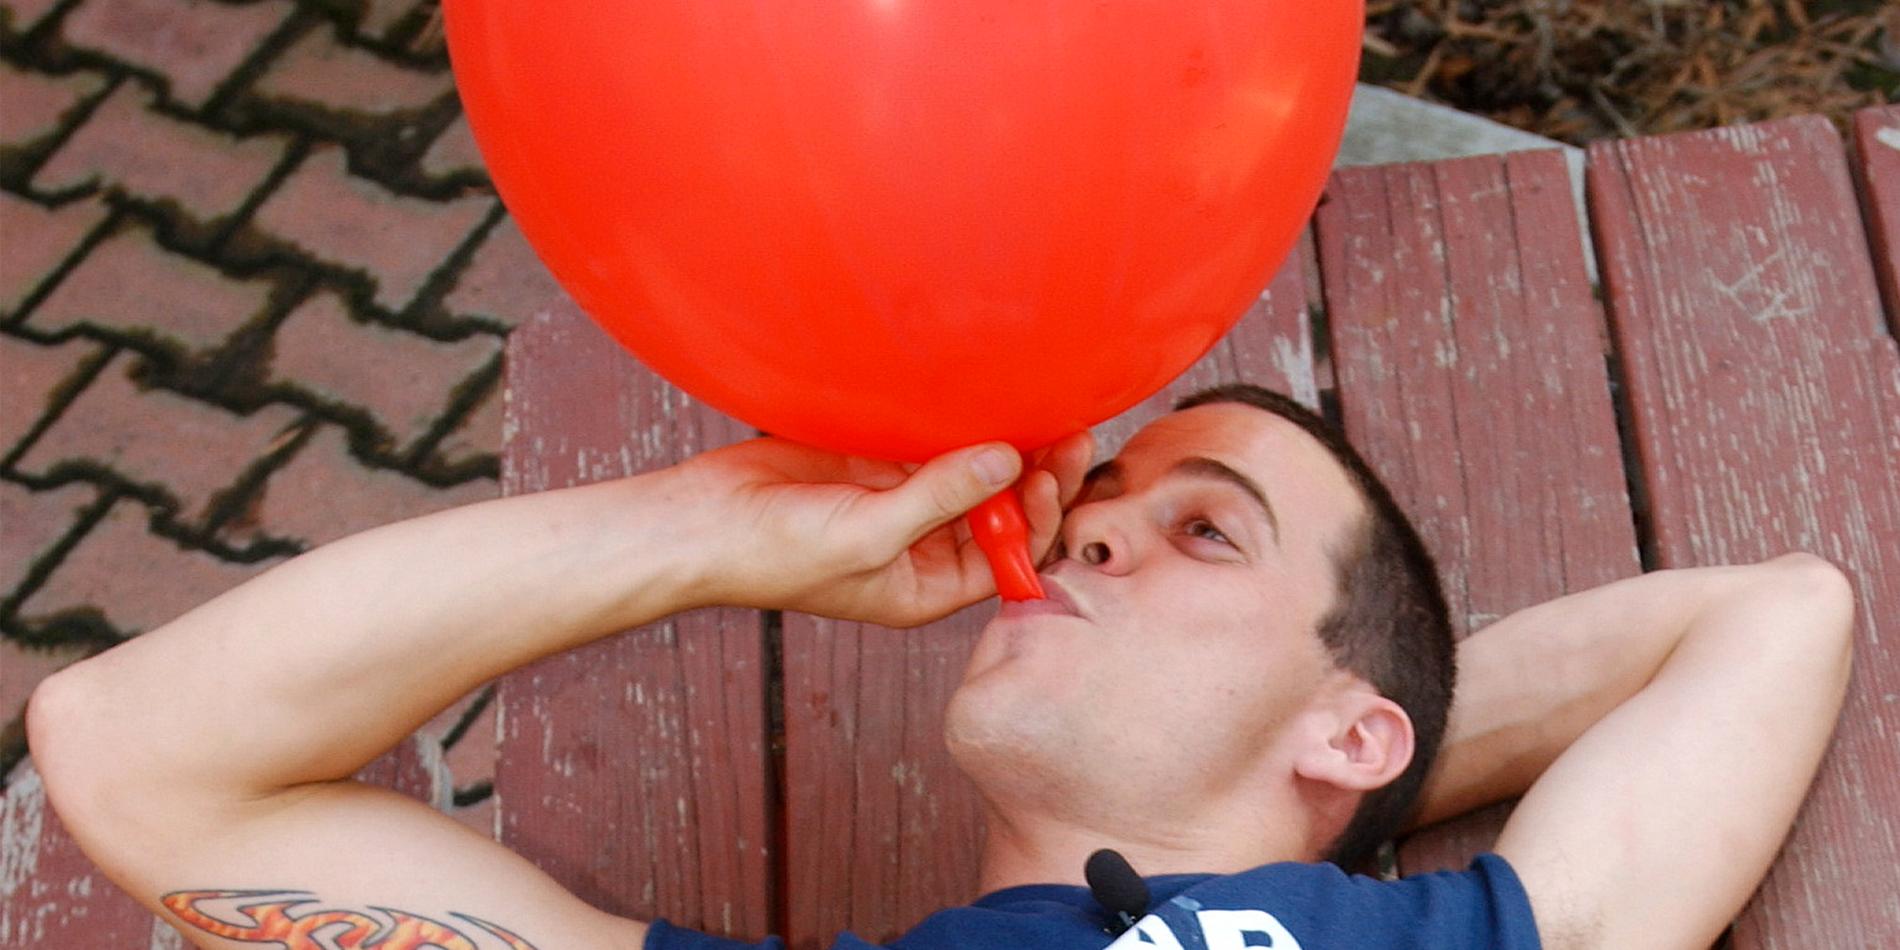 Skådespelaren Steve Glover ”Steve-O” tar lustsgas med hjälp av en ballong.